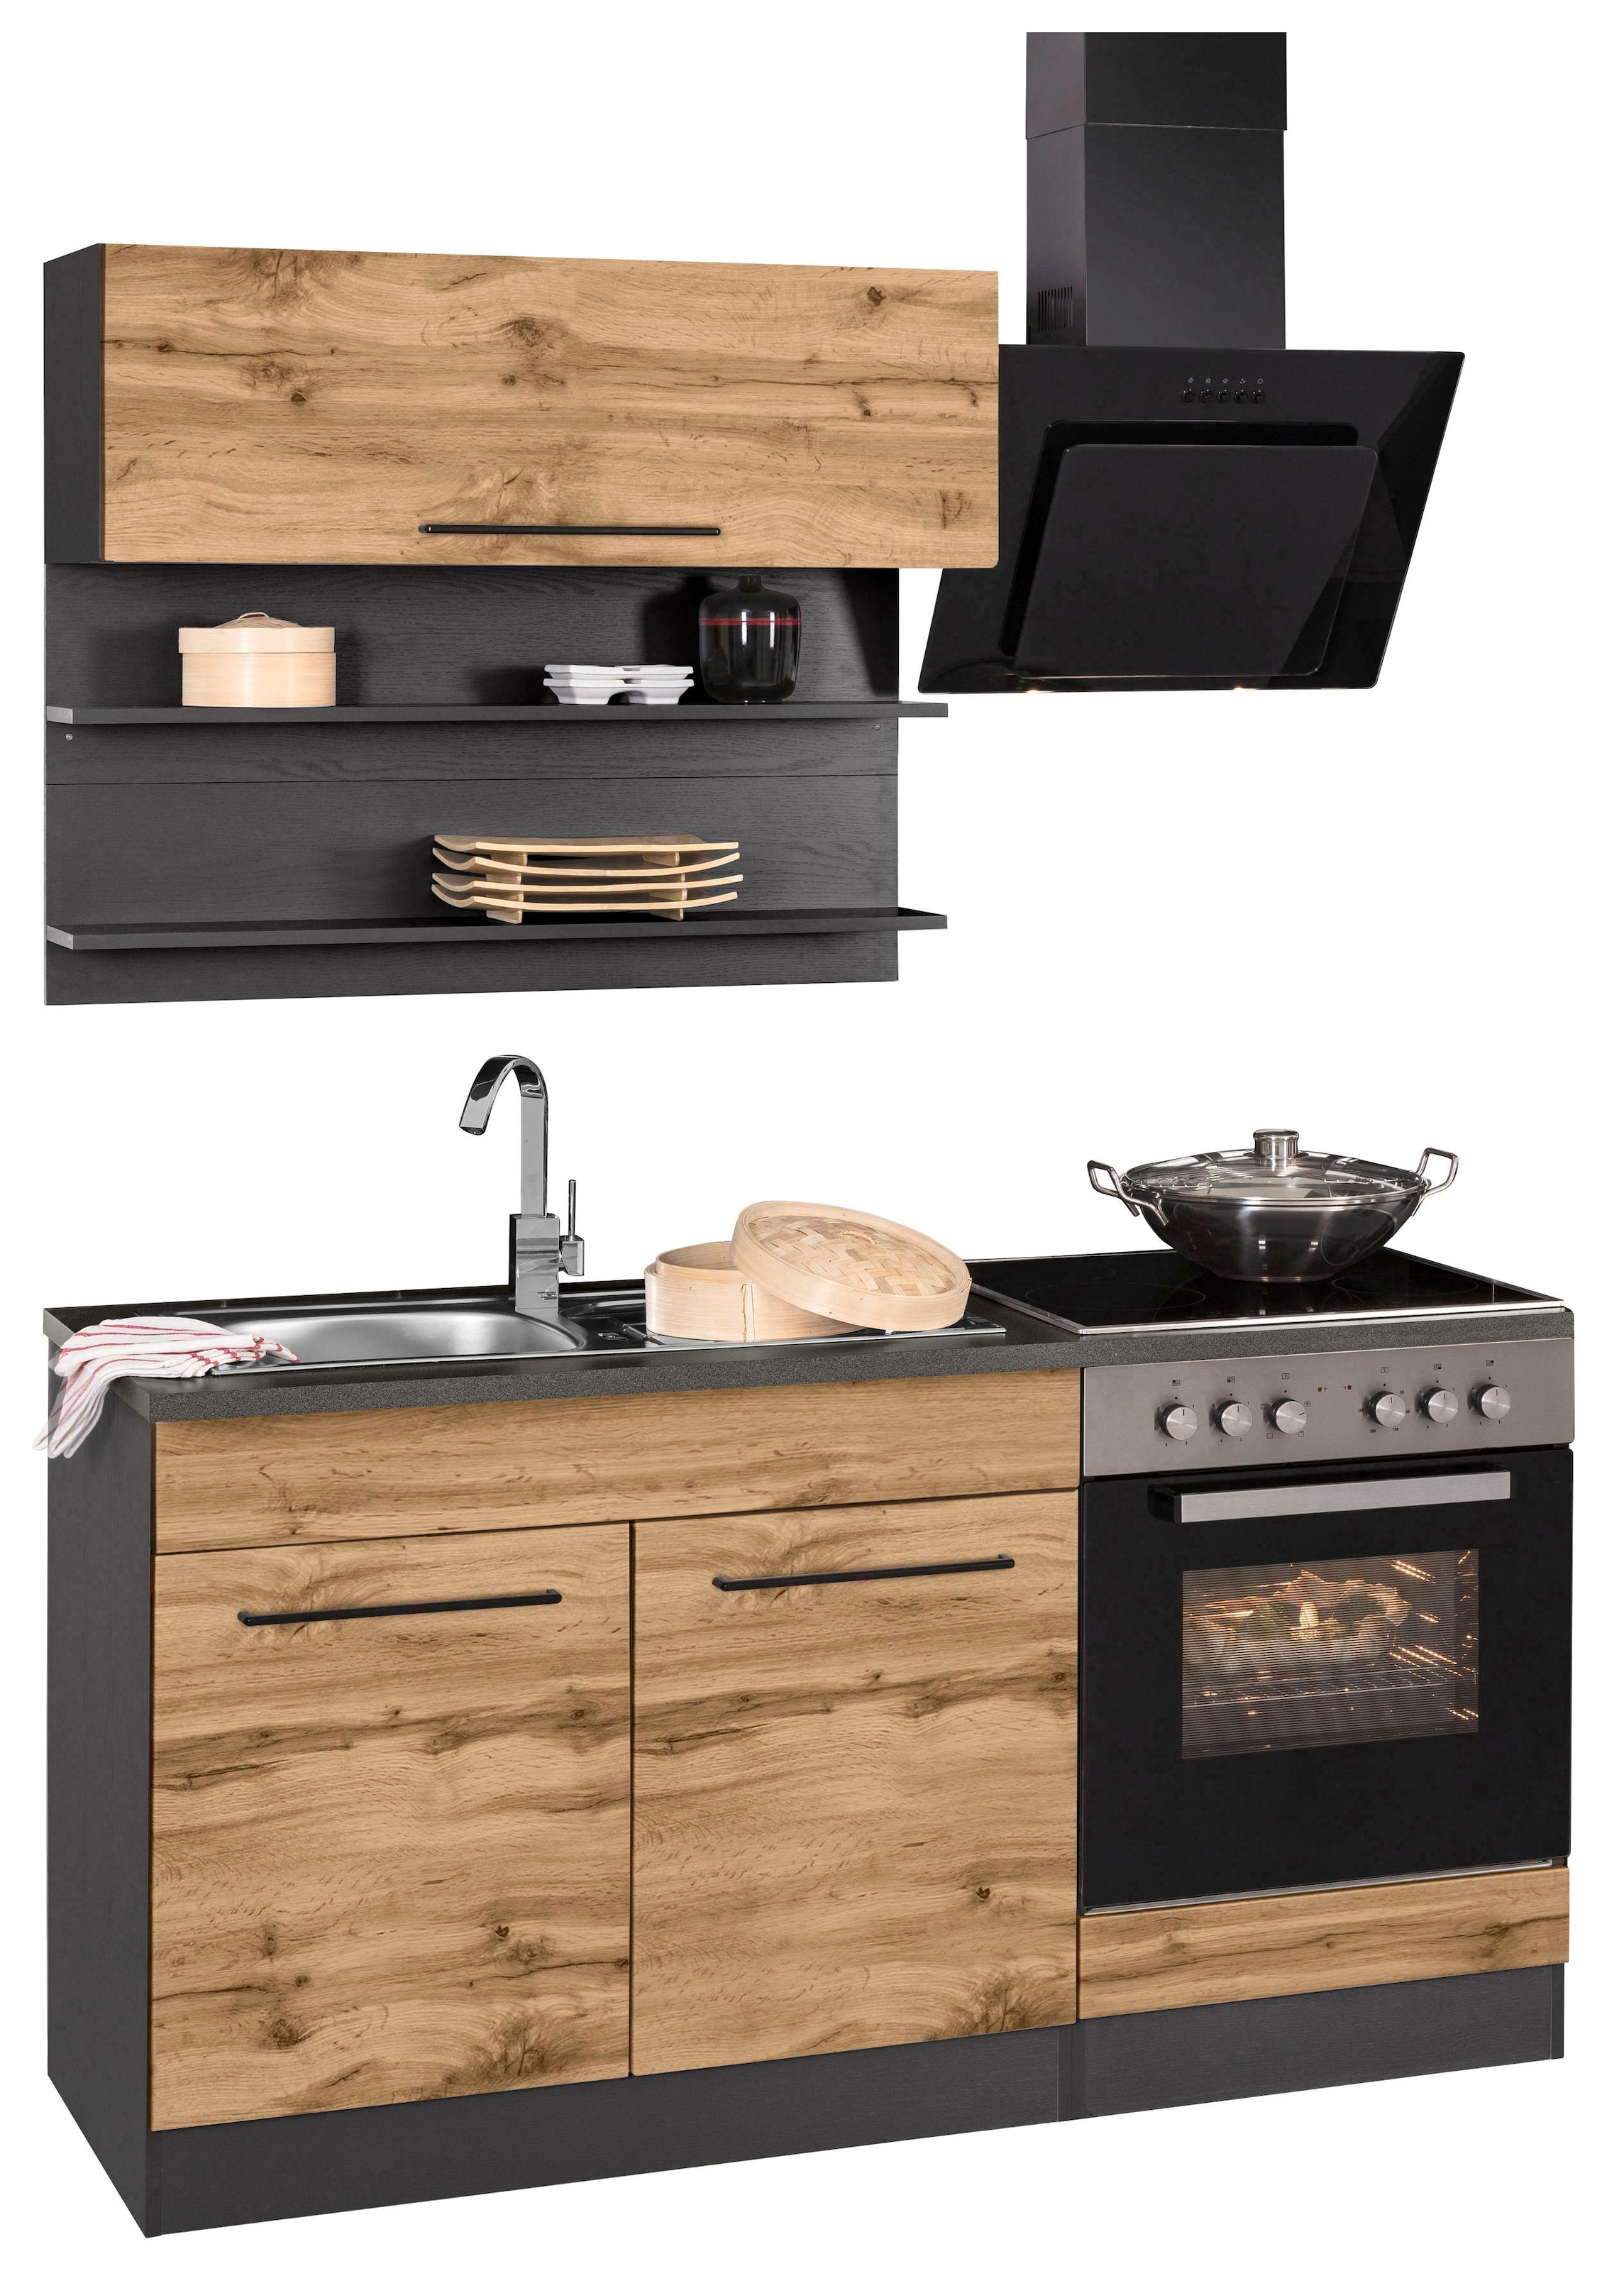 HELD MÖBEL Küchenzeile »Tulsa«, Breite 160 cm, schwarze Metallgriffe, hochwertige MDF Fronten